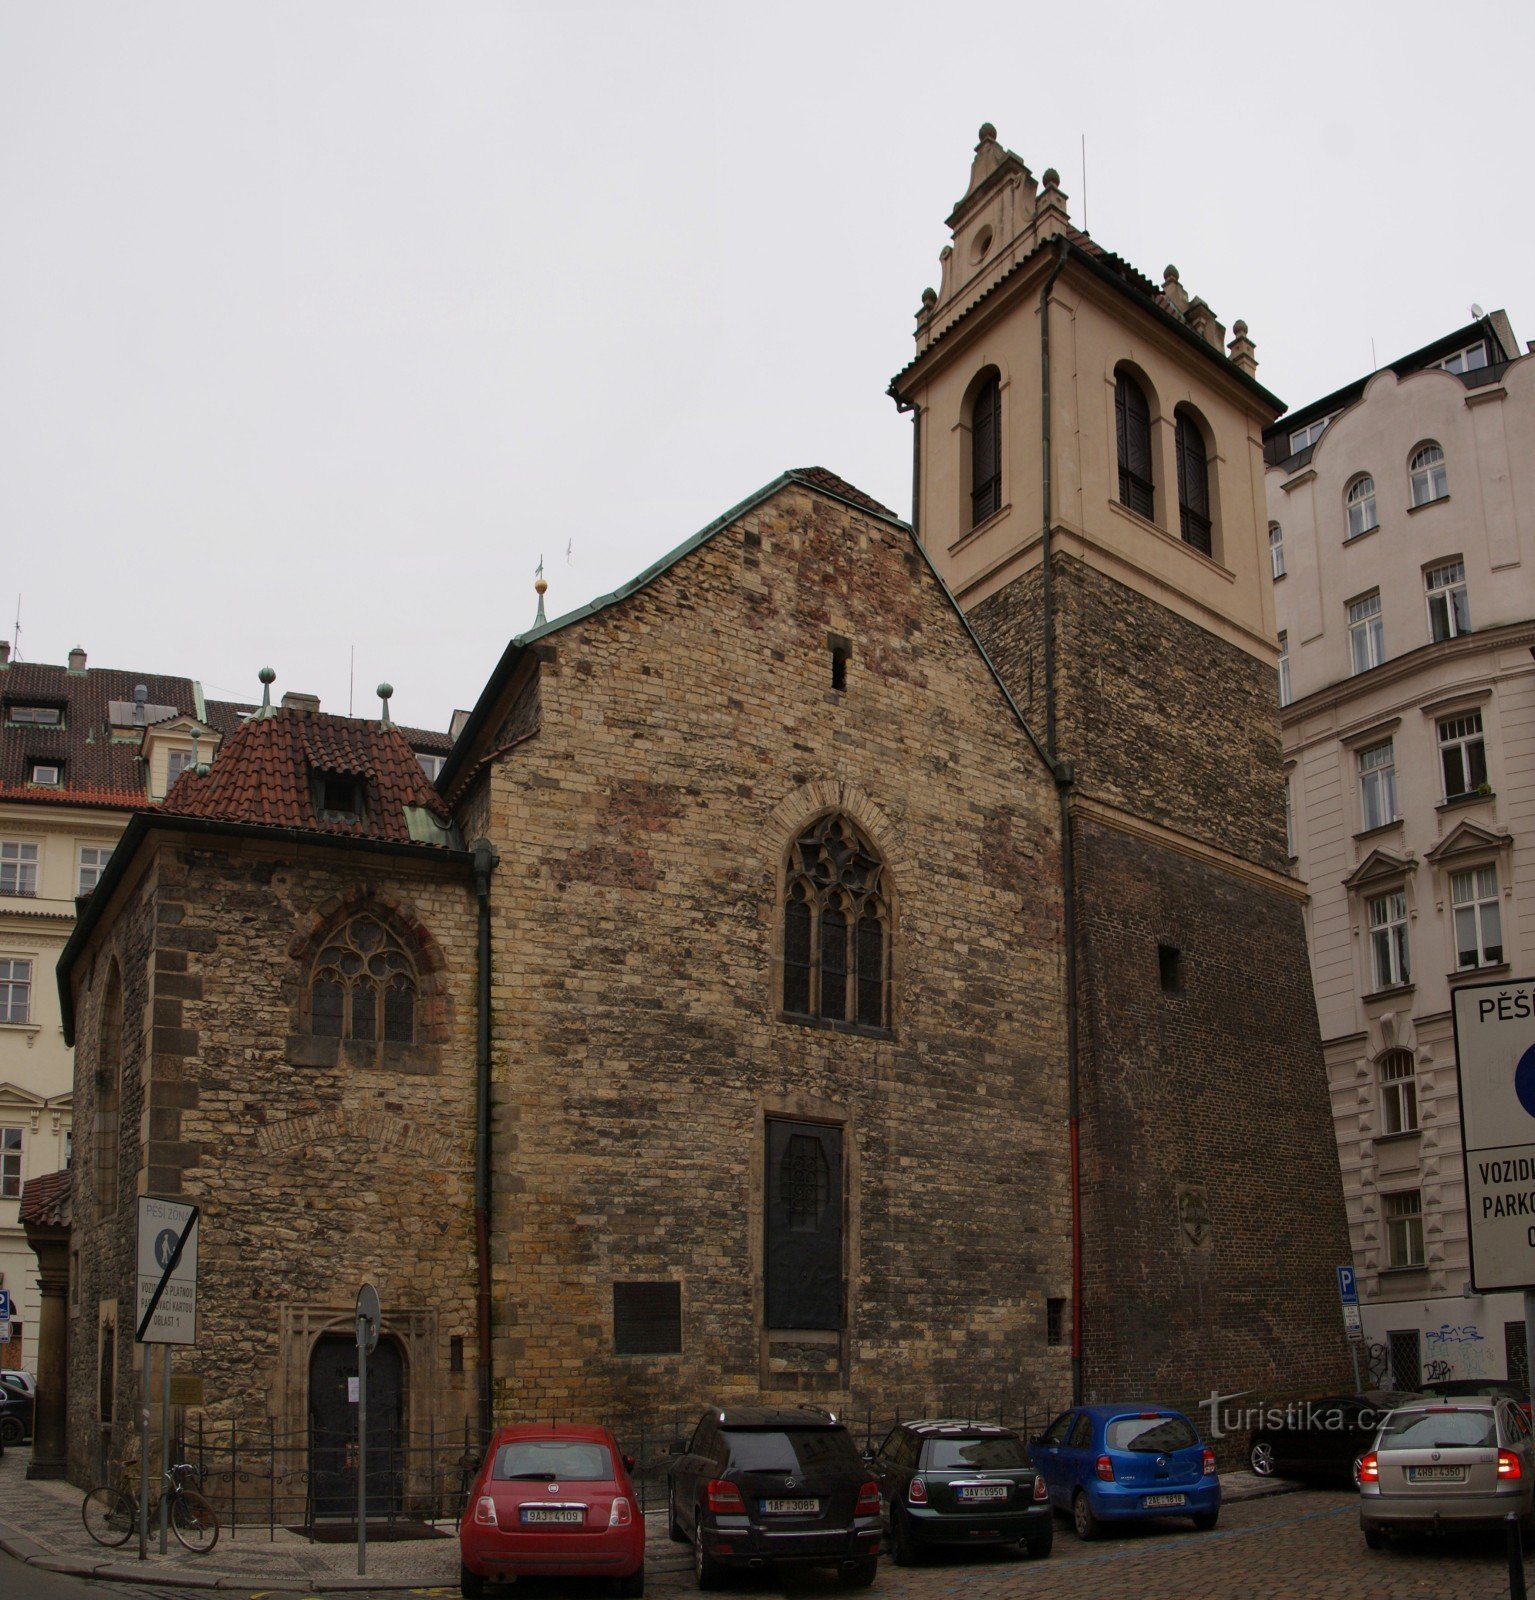 Prag - Den gamle bydel - St. Martin i væggen